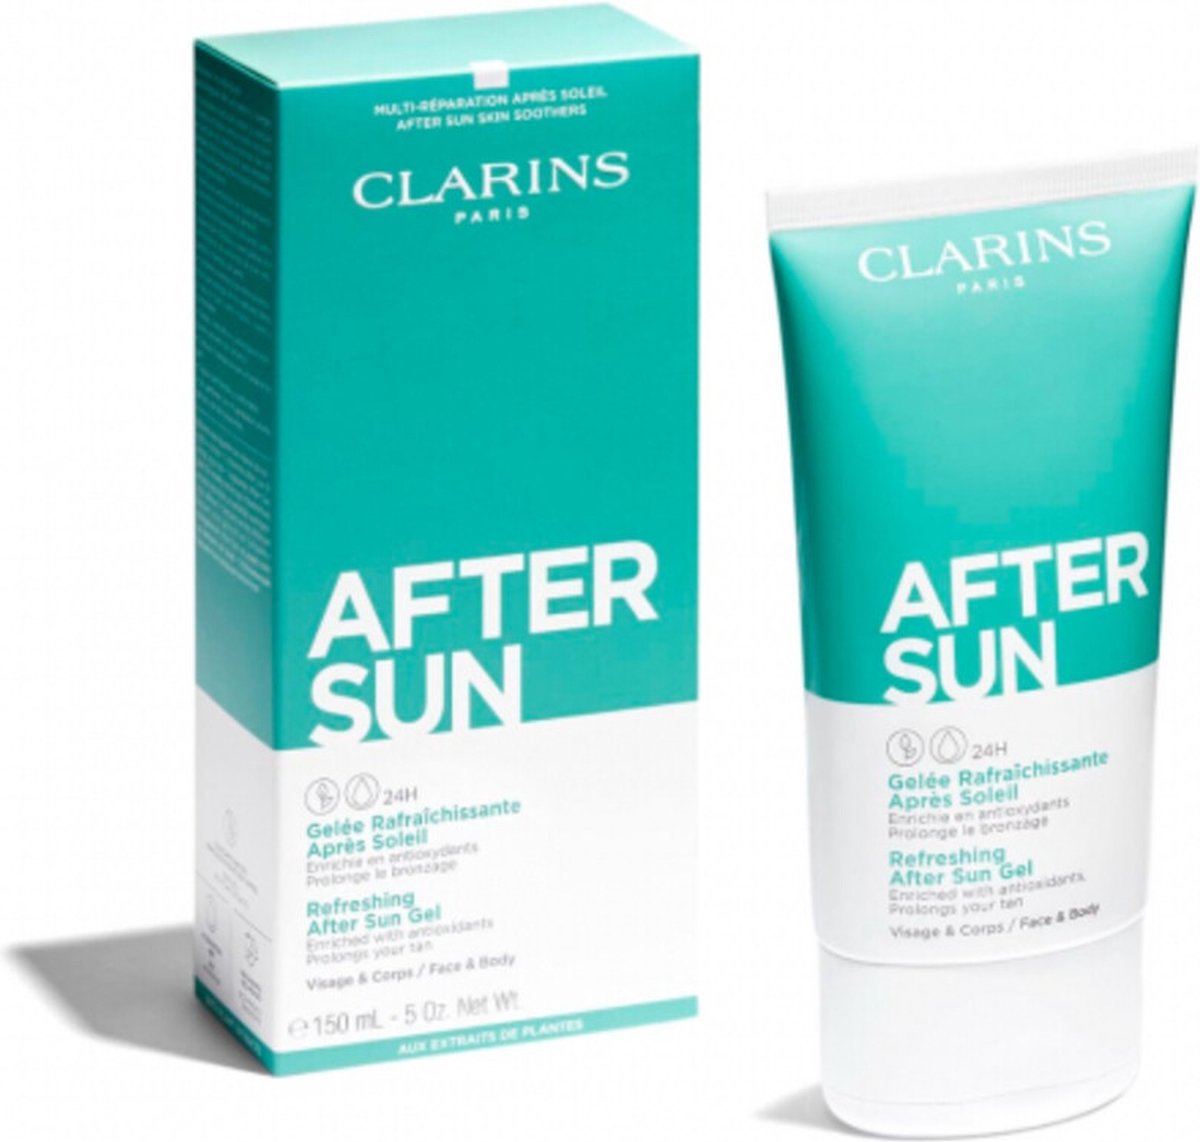 Clarins After Sun Gel - gezicht en lichaam - After Sun - 150 ml - Clarins